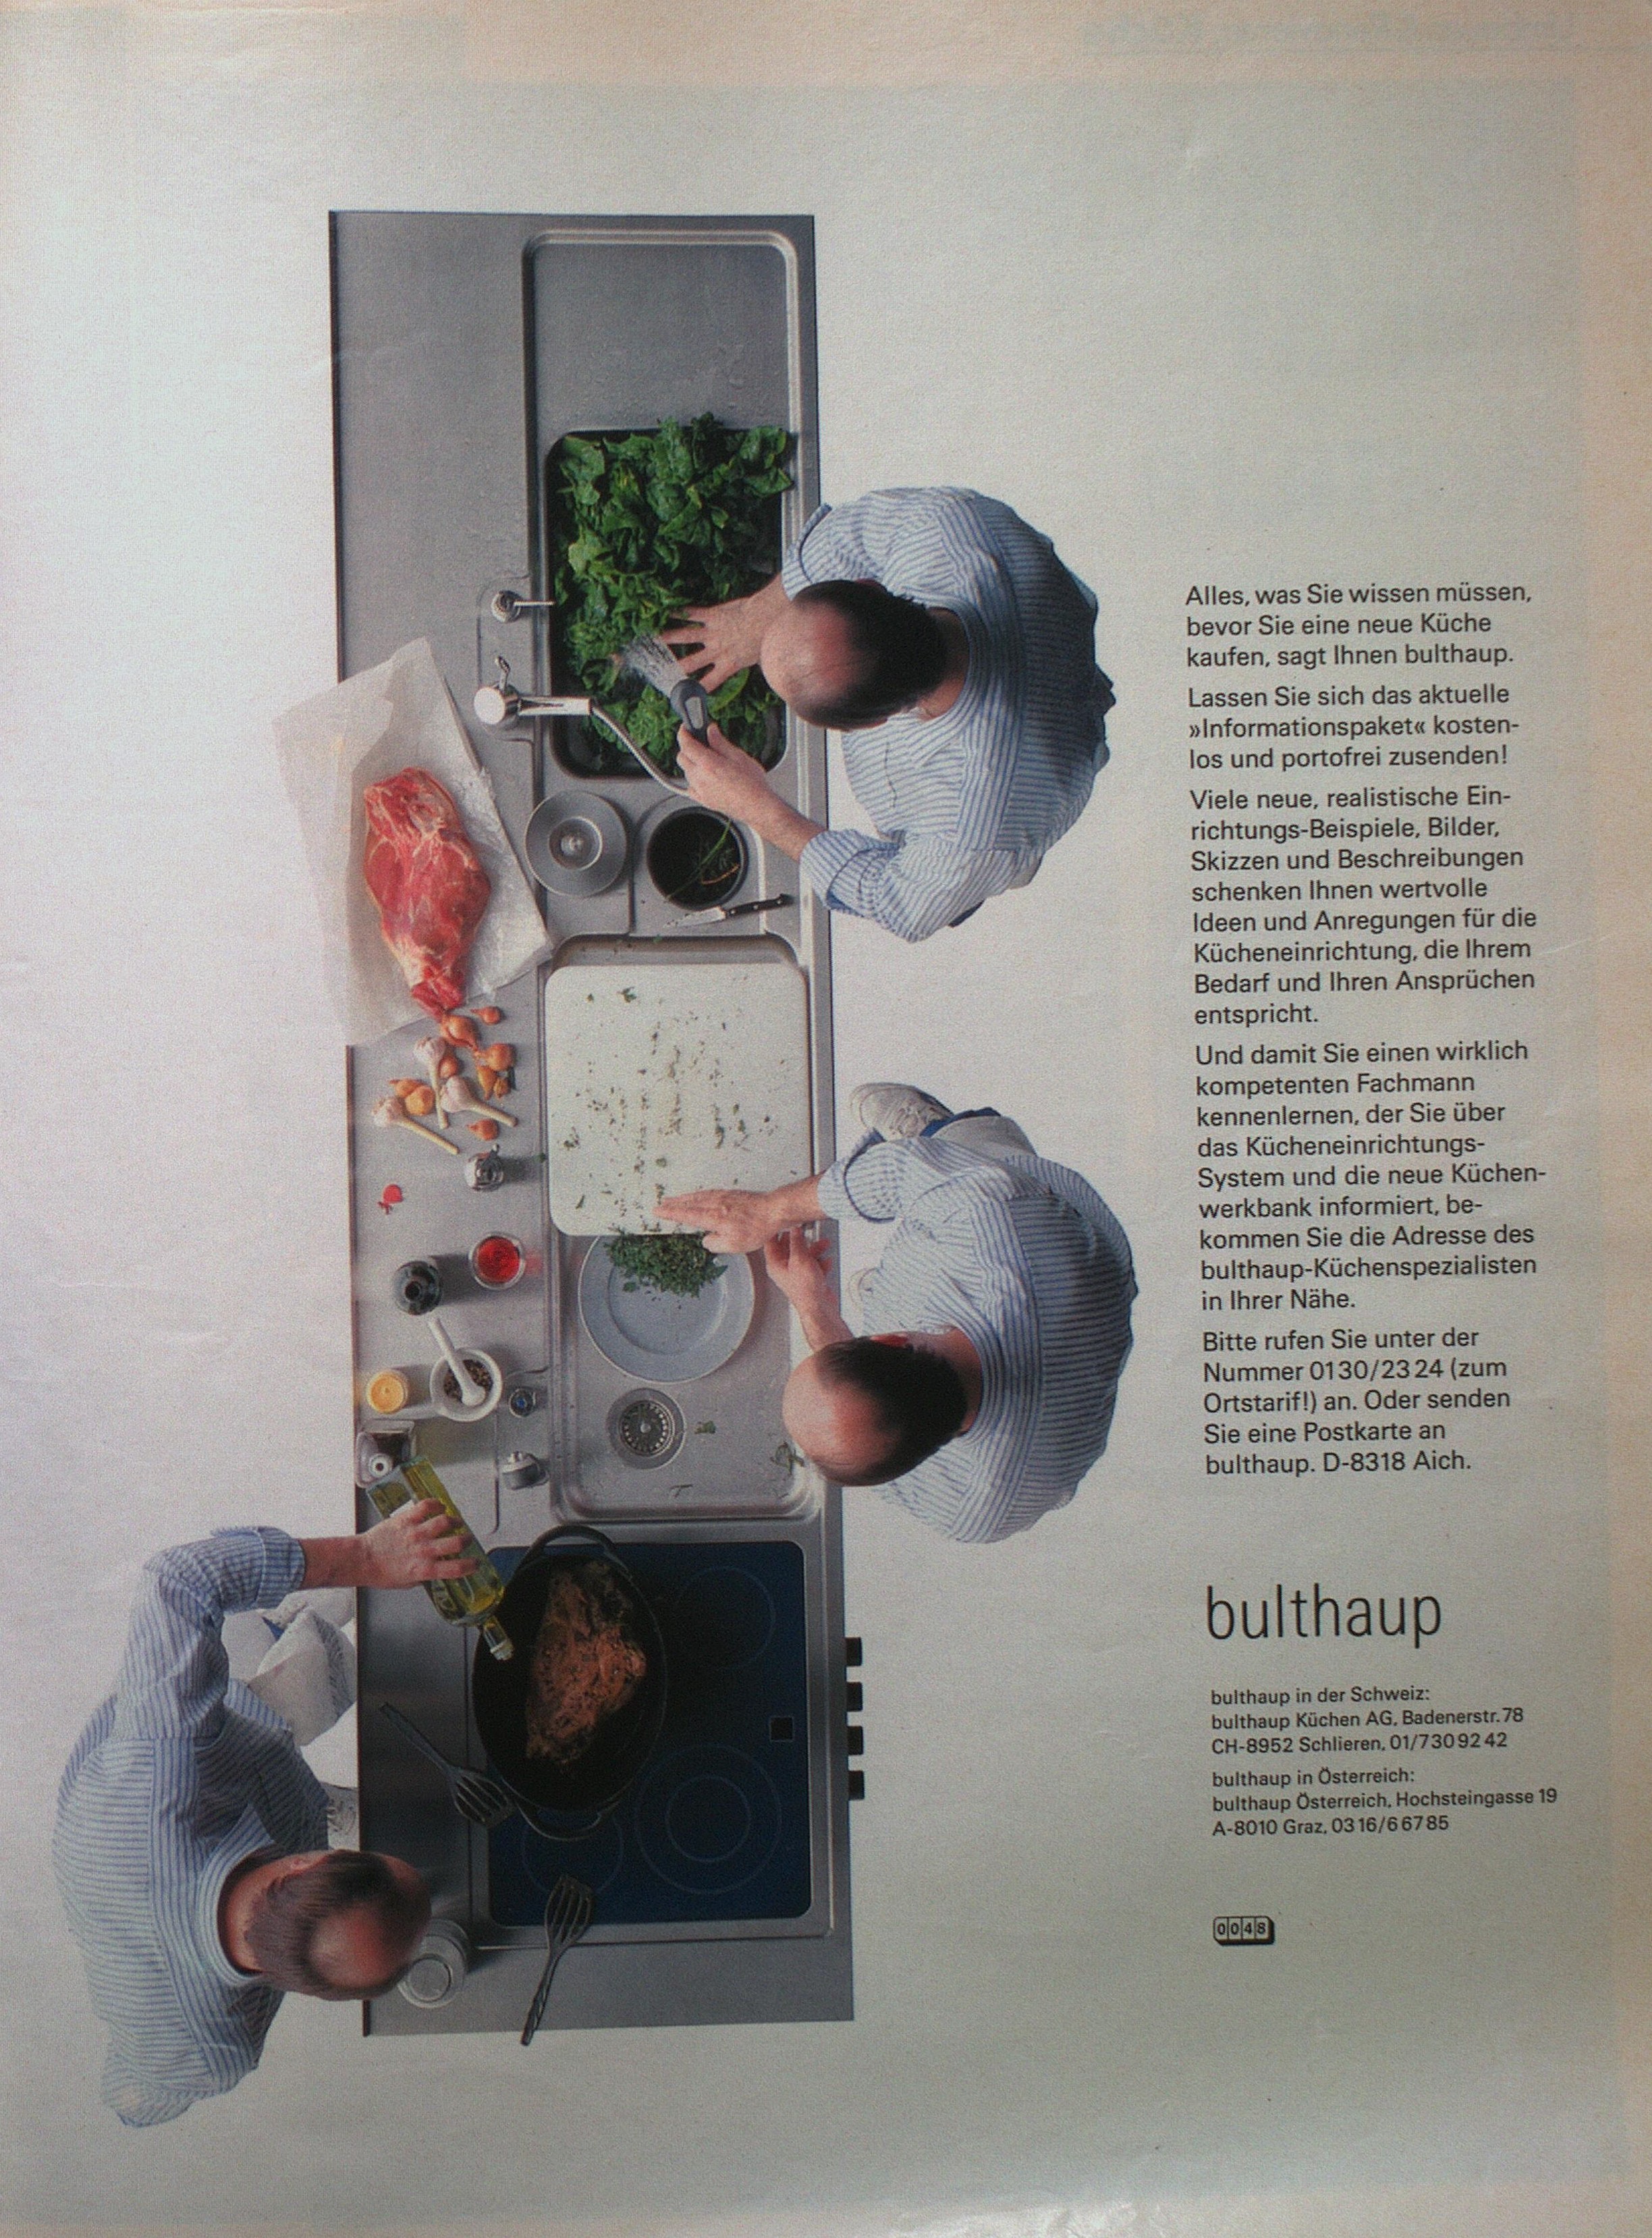 Zu sehen ist eine Werbeanzeige der Firma bulthaup in der Zeitschrift Schöner Wohnen von August 1990.